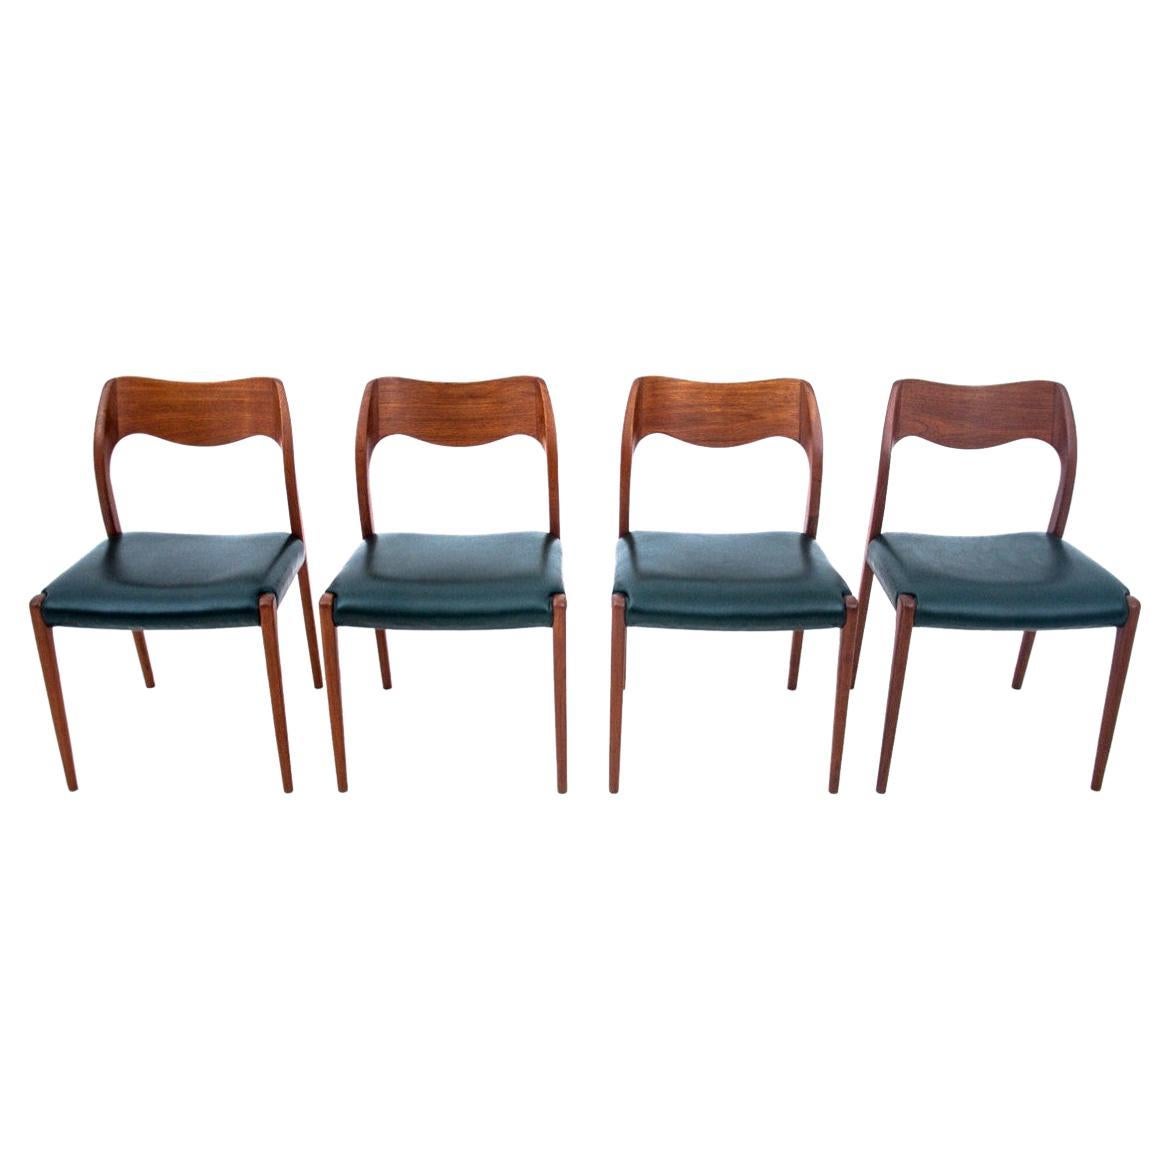 Four Teak Chairs, Model 71, Designed by N.O. Møller in 1960s